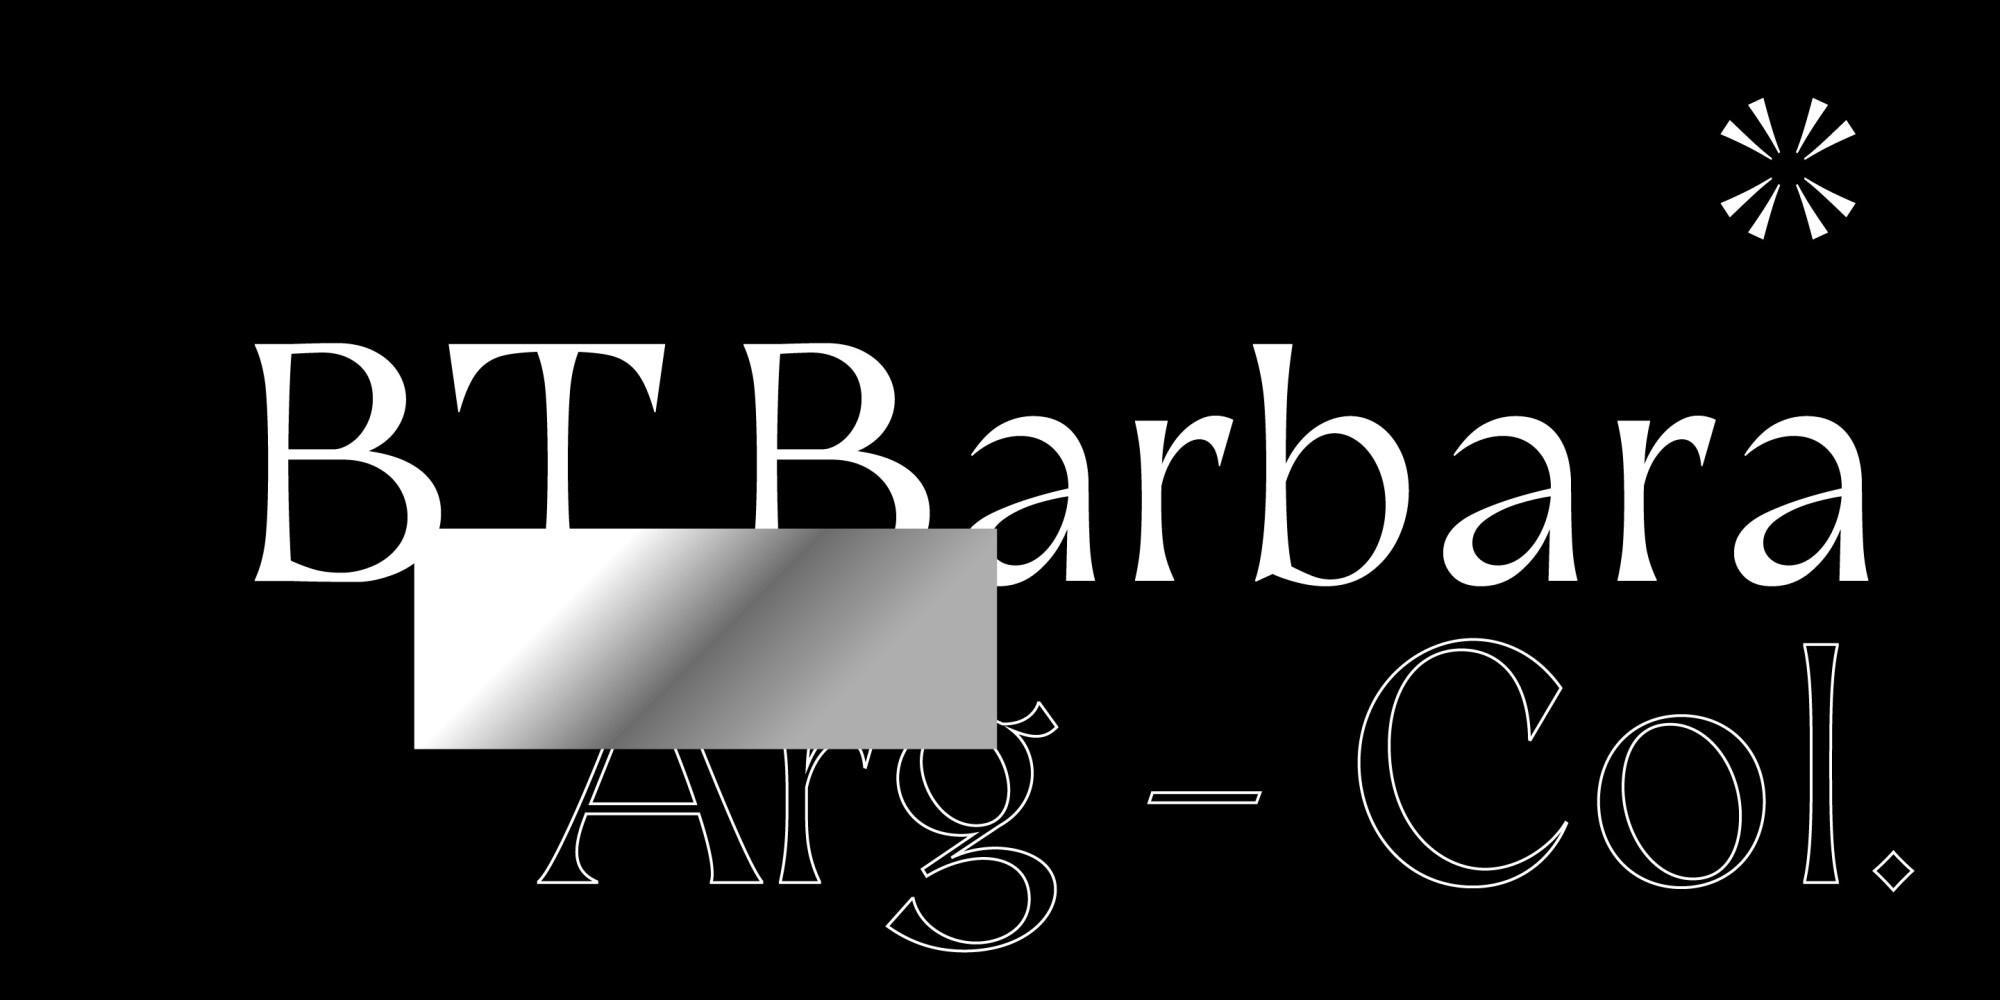 Ejemplo de fuente BT Barbara